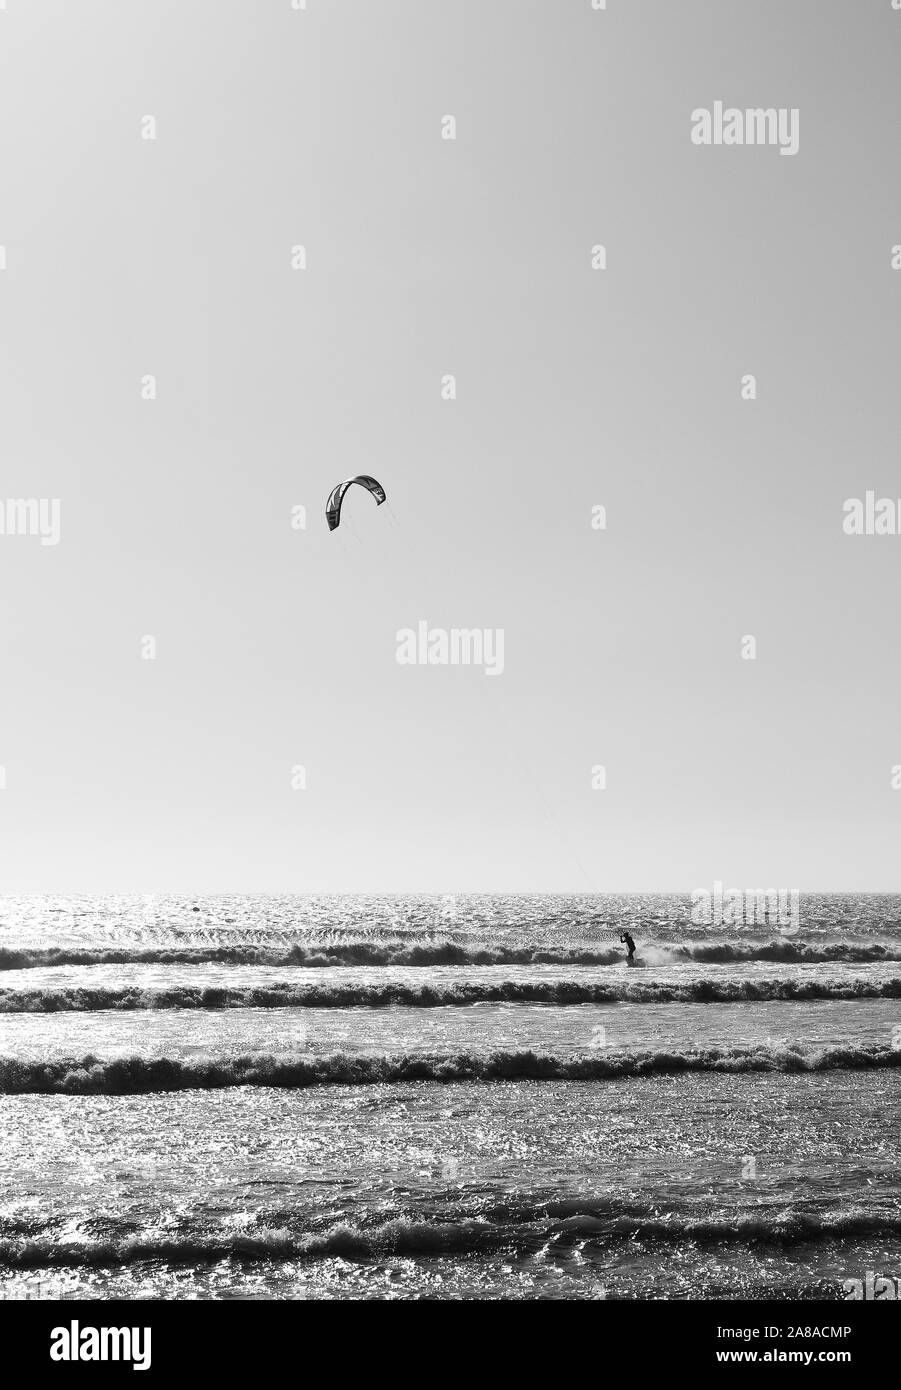 Kite surfing in Sidi Kaouki beach, near Essaouira. Morocco Stock Photo